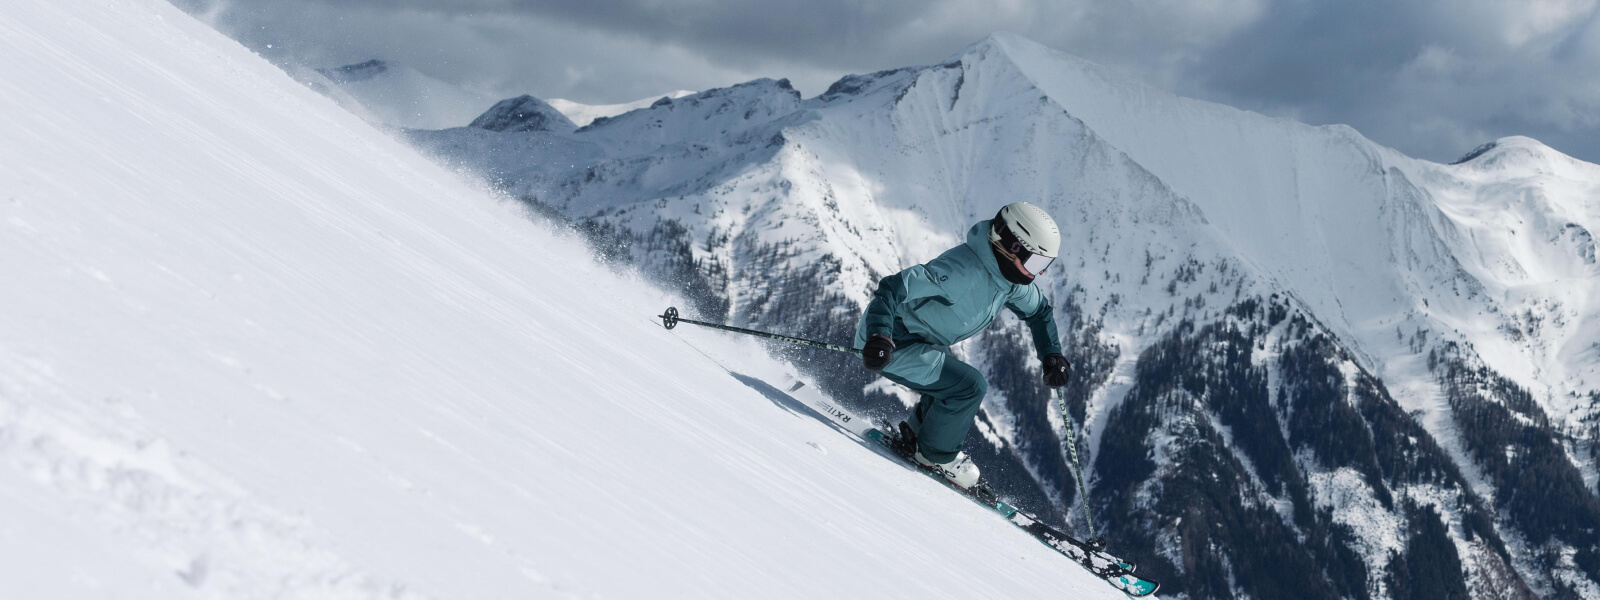 Skiërs drijft een paal af, er zijn met sneeuw bedekte bergen op de achtergrond